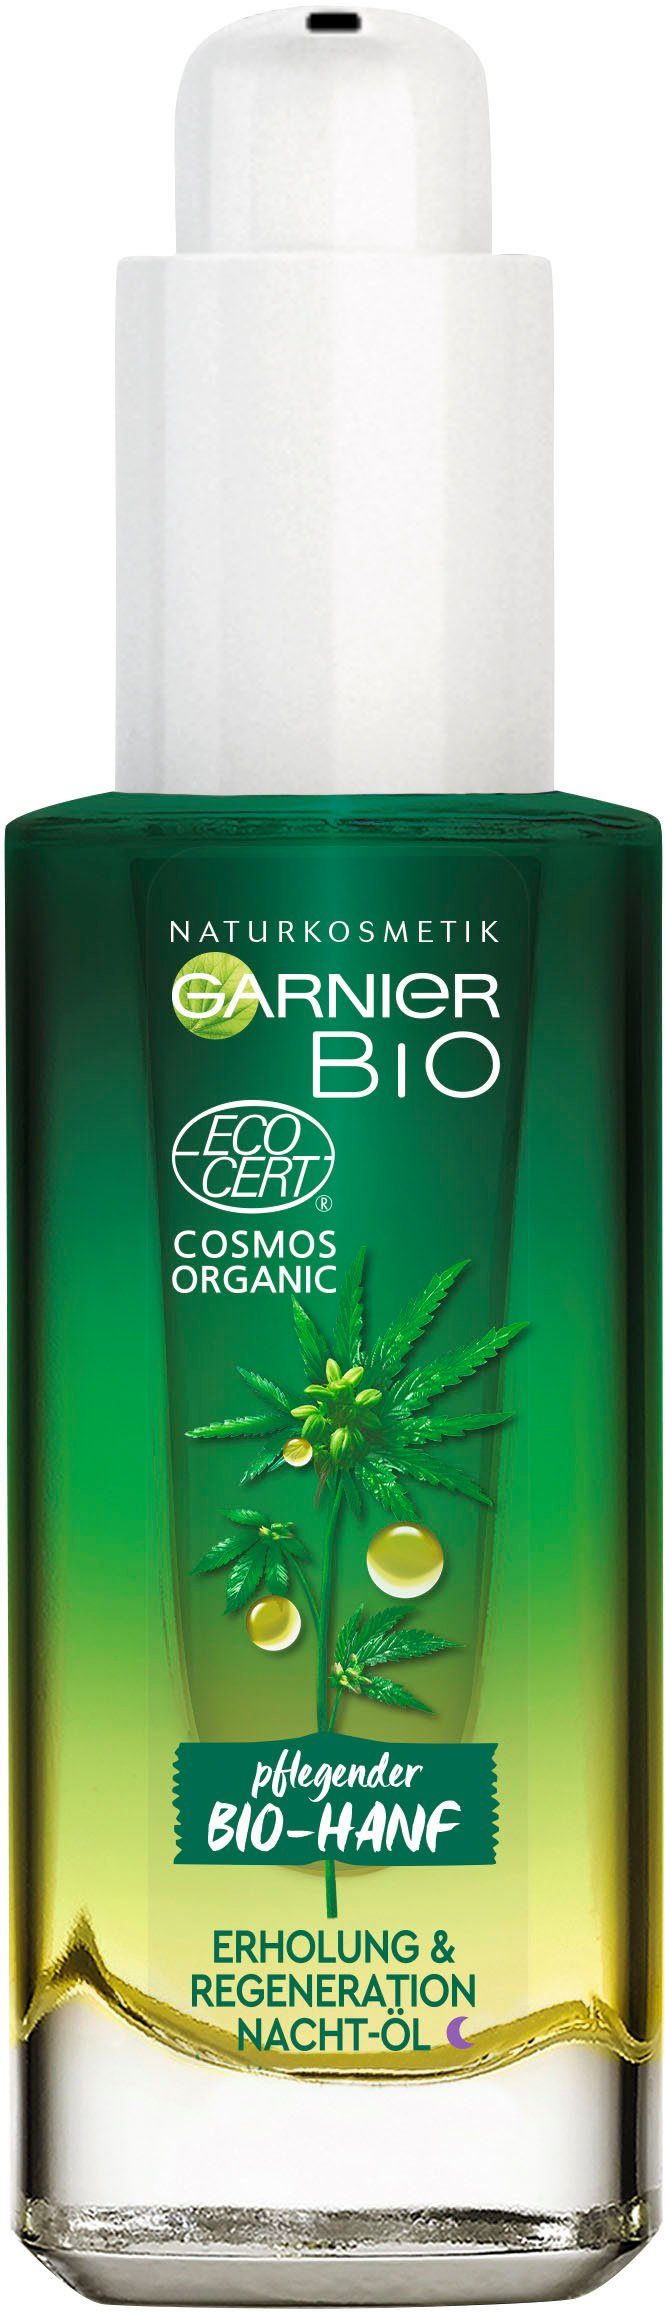 GARNIER Gesichtsöl Bio-Hanf Erholung & Naturkosmetik Regeneration Nacht-Öl